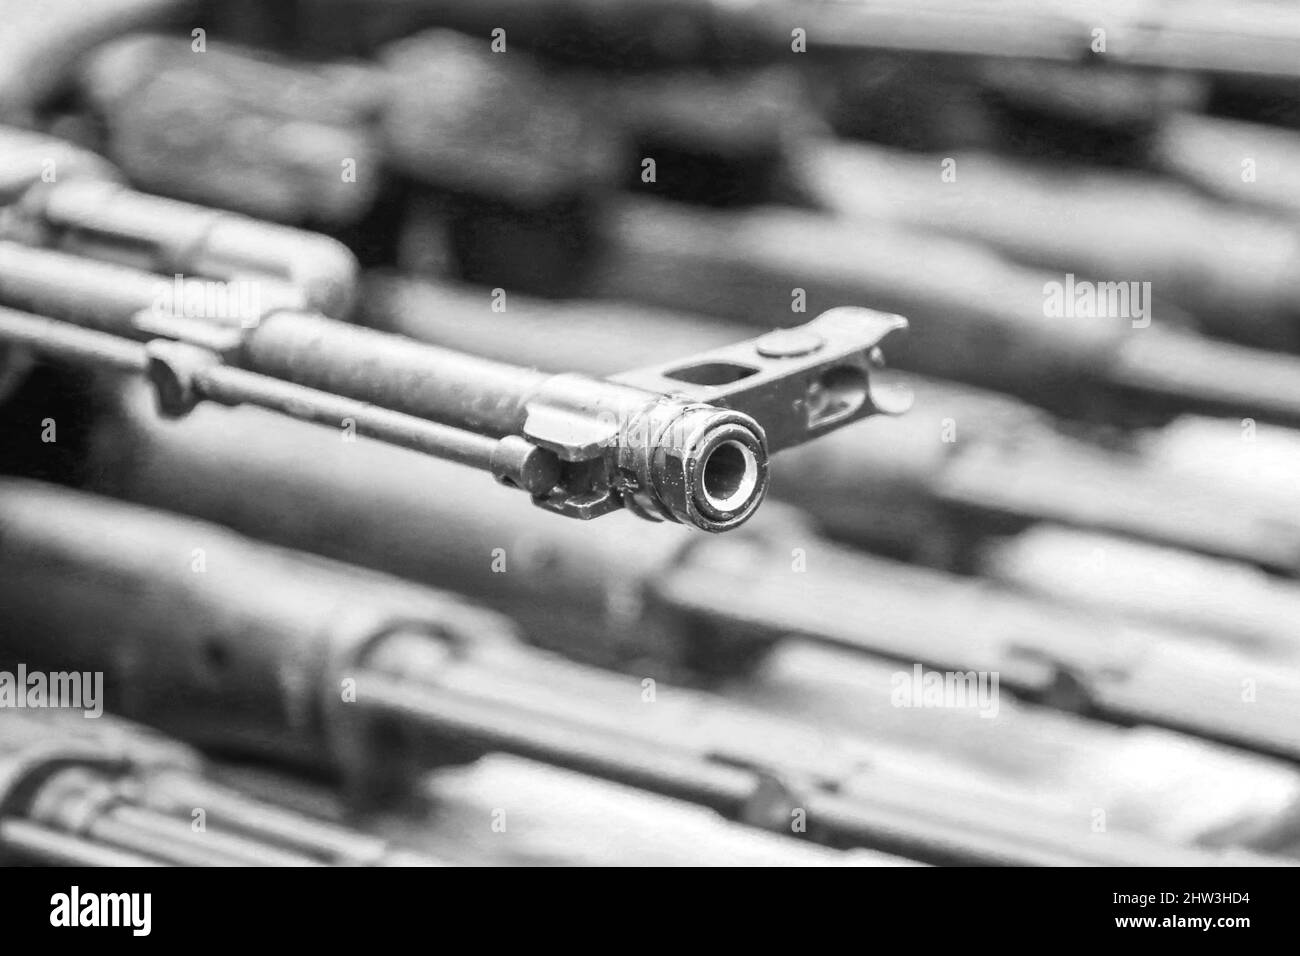 Russian AK-47 assault rifle Stock Photo